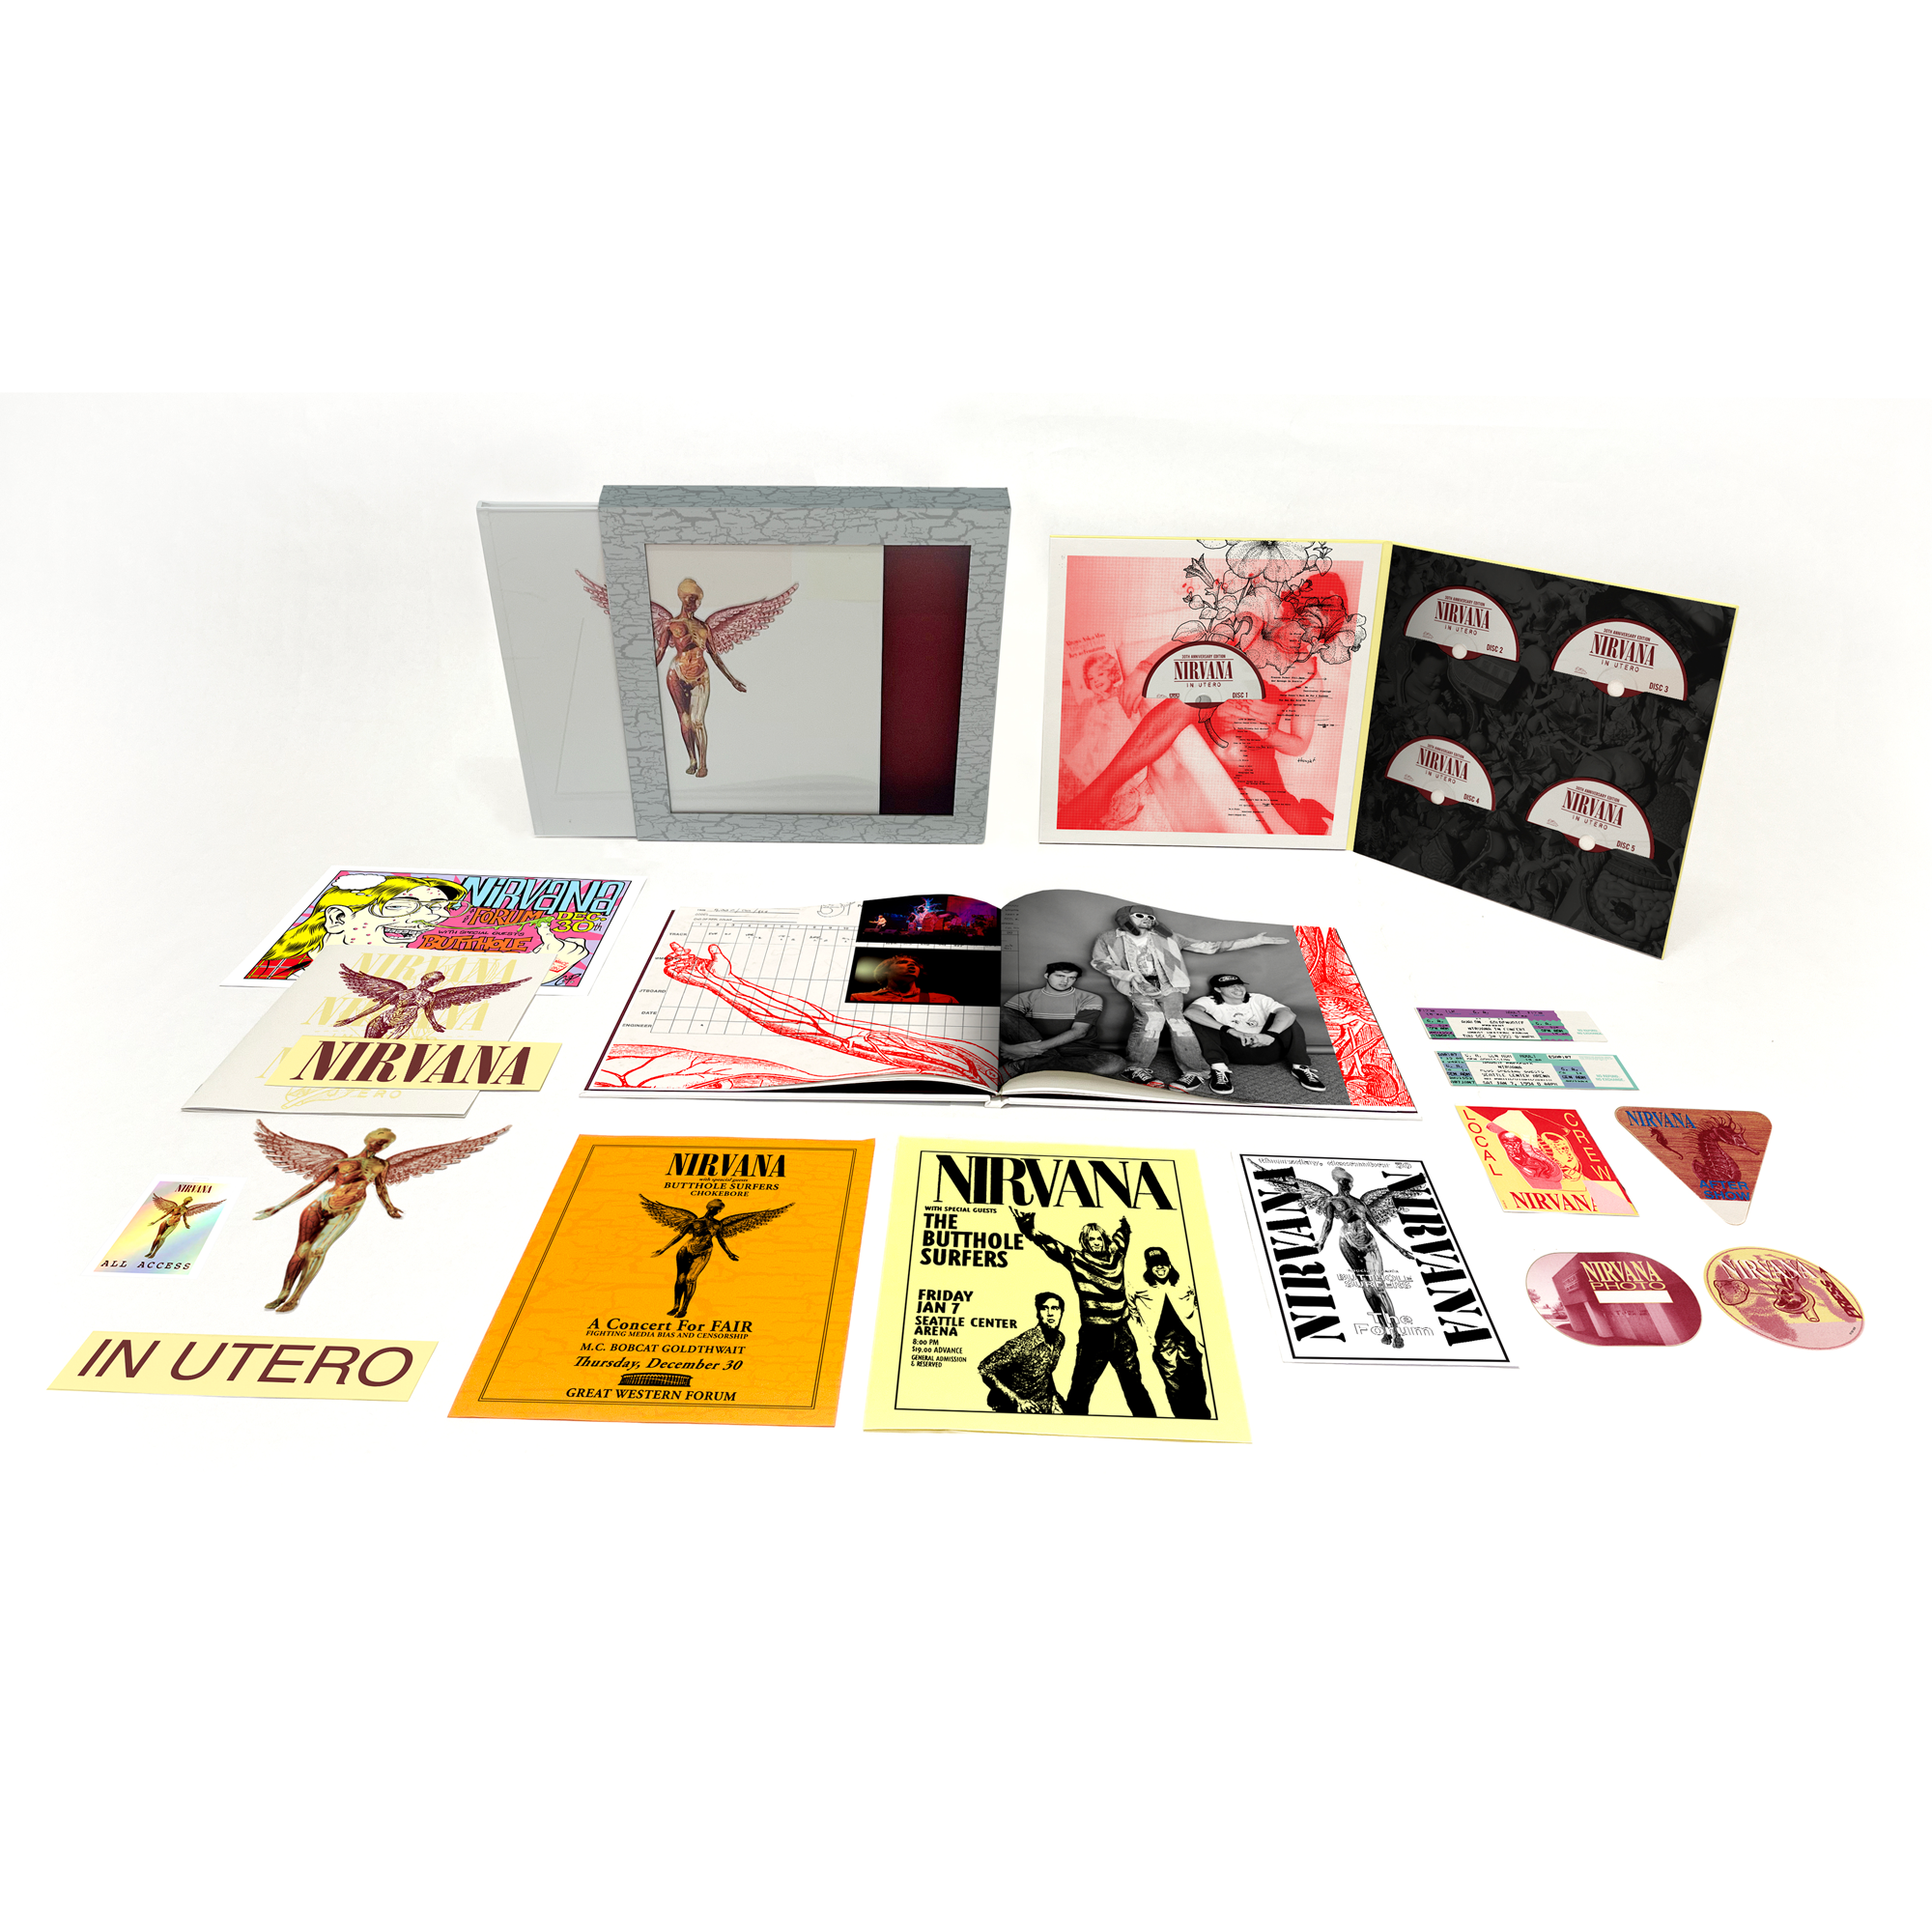 Nirvana - In Utero (30th Anniversary): Super Deluxe 8LP Box Set - uDiscover